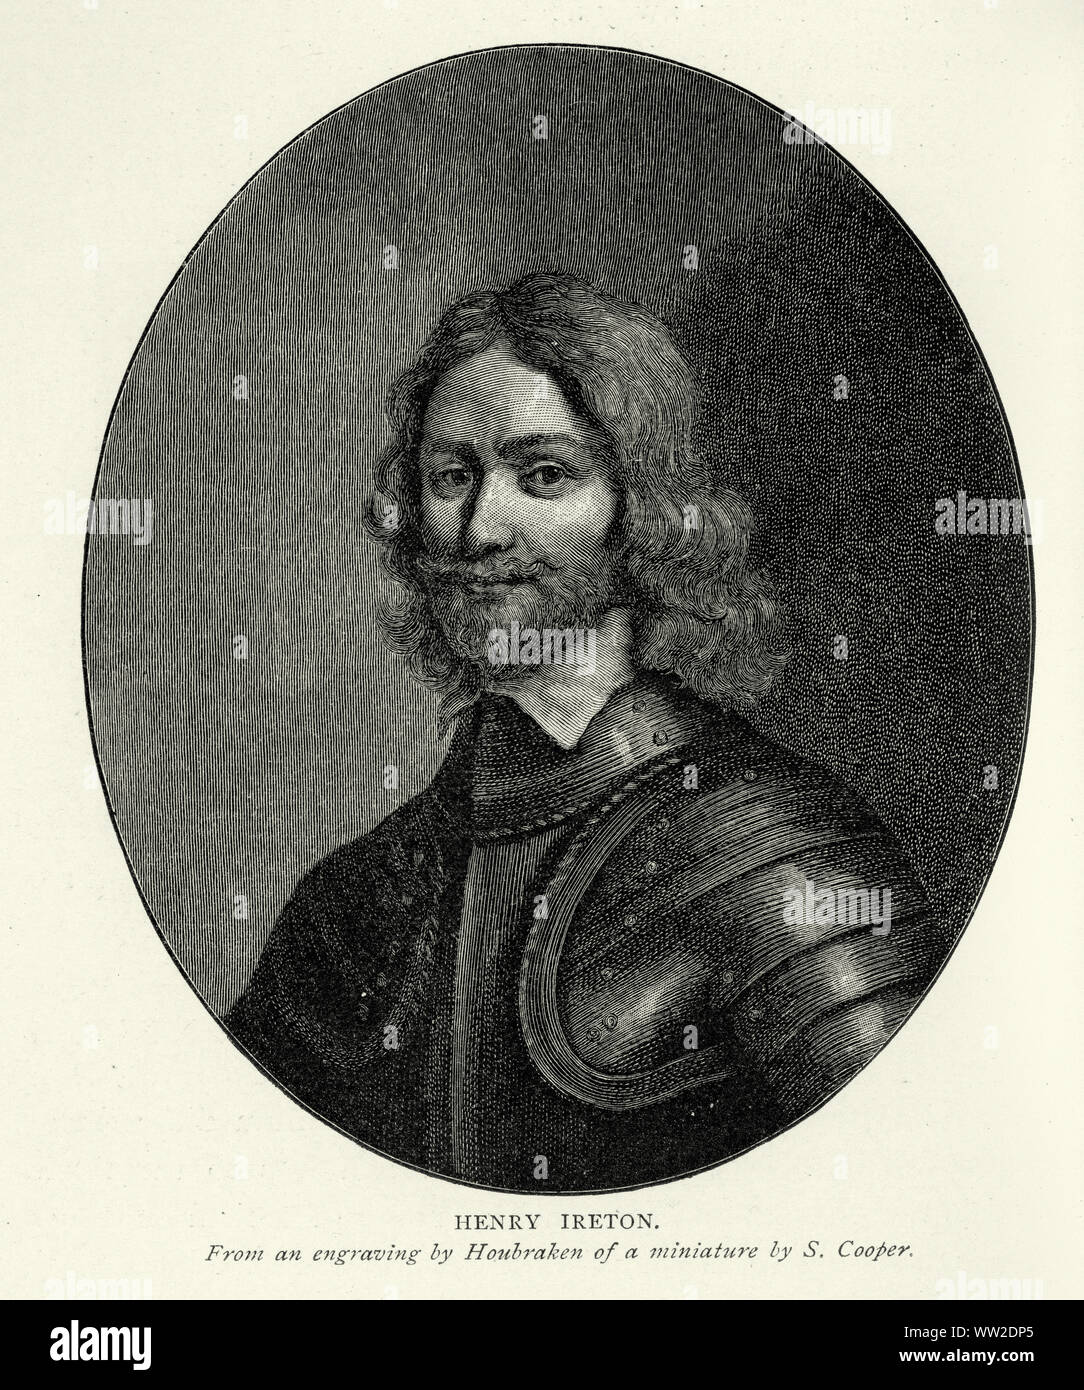 Henry Ireton (1611 - 26. November 1651) war ein englischer General in der parlamentarischen Armee während des Englischen Bürgerkriegs, der Schwiegersohn von Oliver Cromwell. Stockfoto